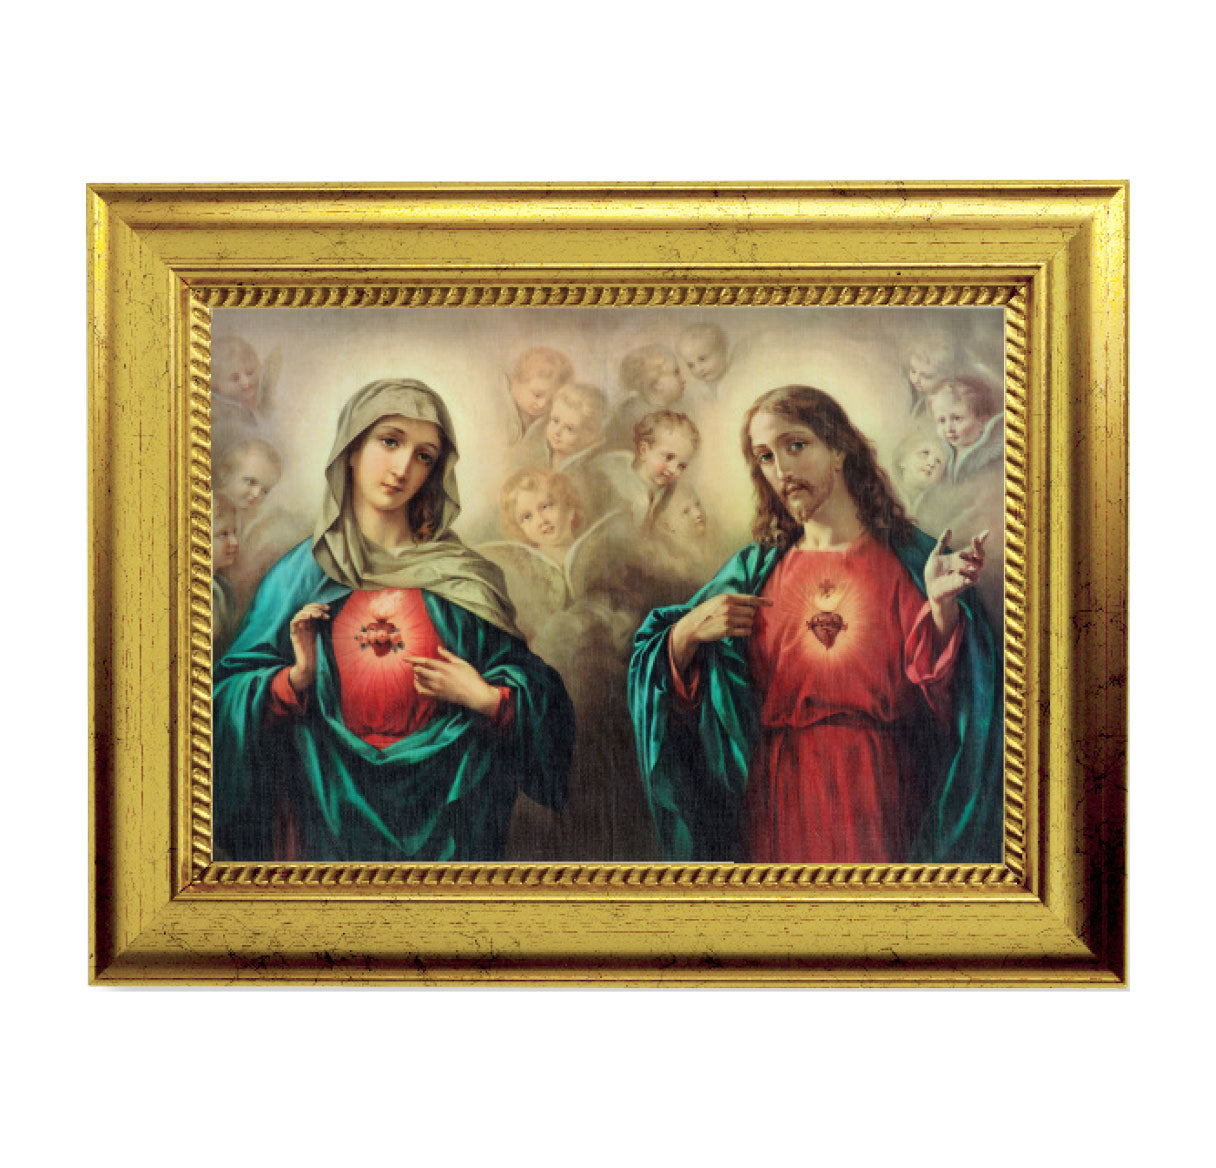 The Angelic Sacred Hearts Gold-Leaf Framed Art